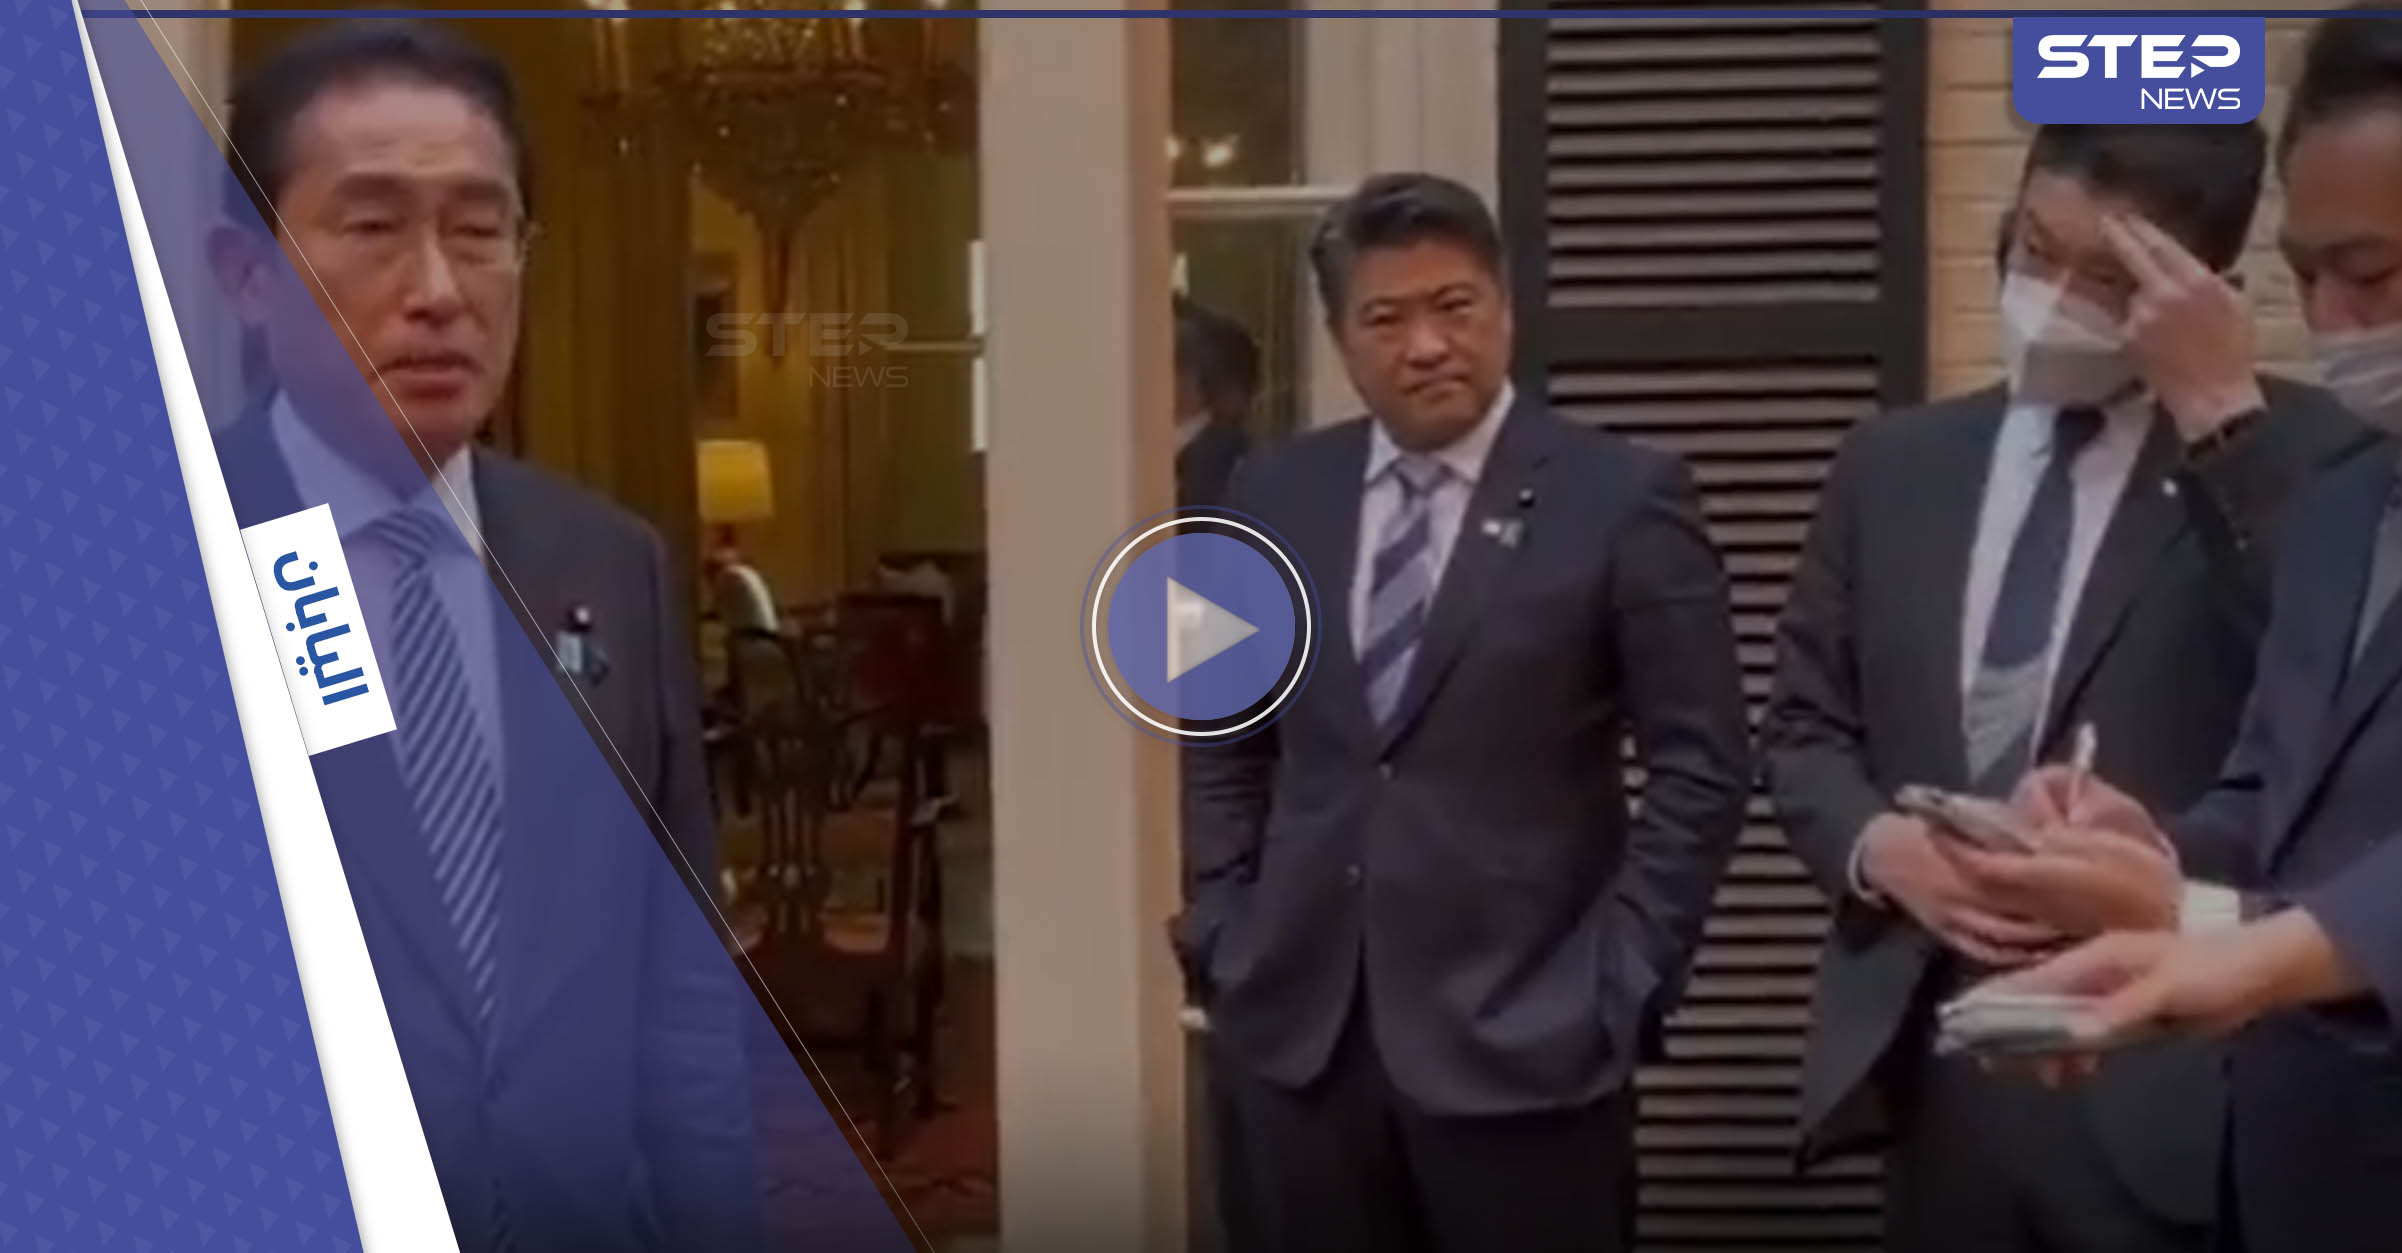 بالفيديو|| والدة مساعد رئيس الوزراء الياباني توبخه بسبب حركة "قليلة أدب" فعلها أمام عدسات المصورين